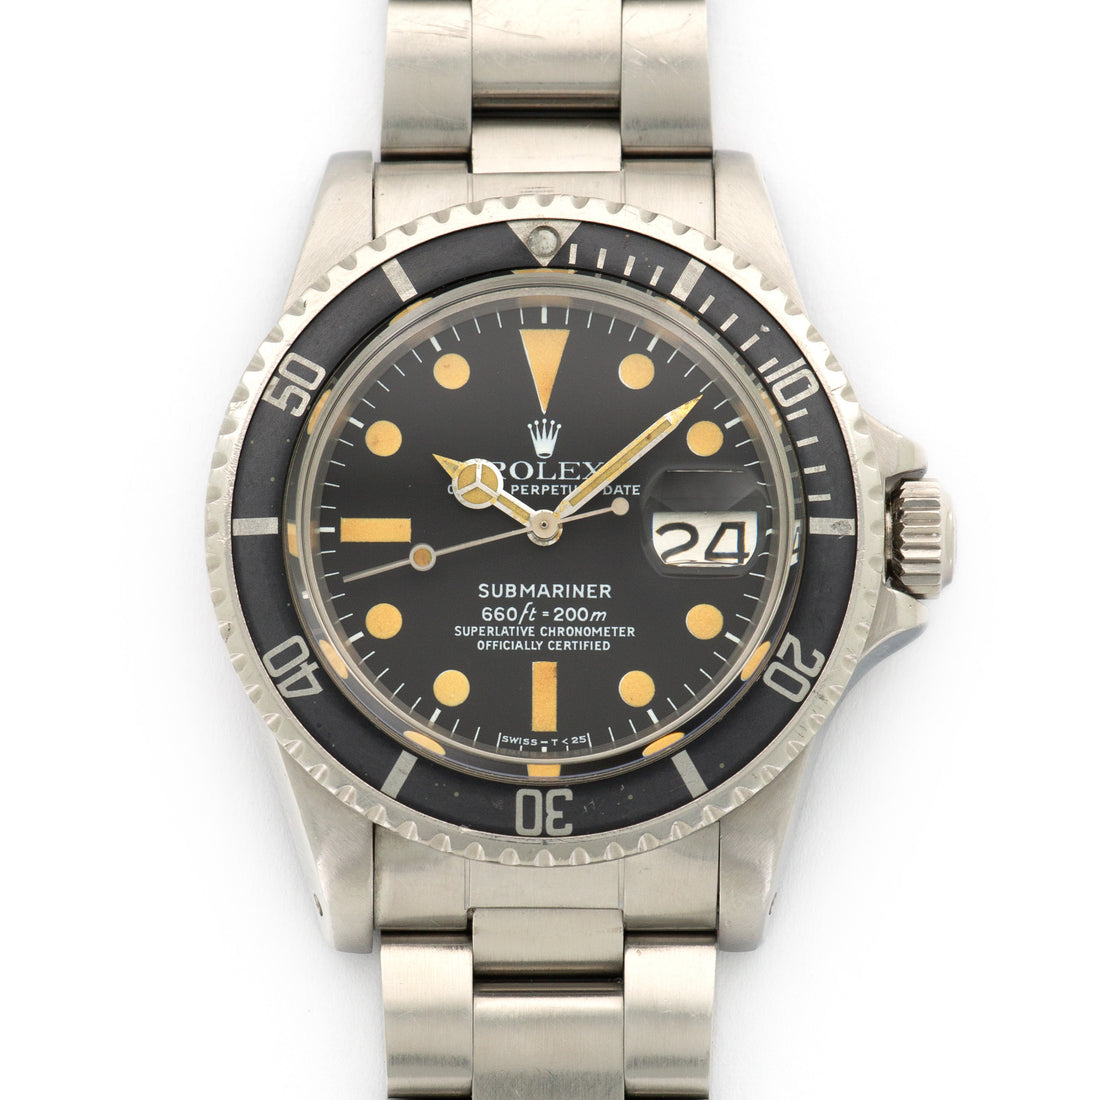 Rolex Steel Submariner Watch Ref. 1680